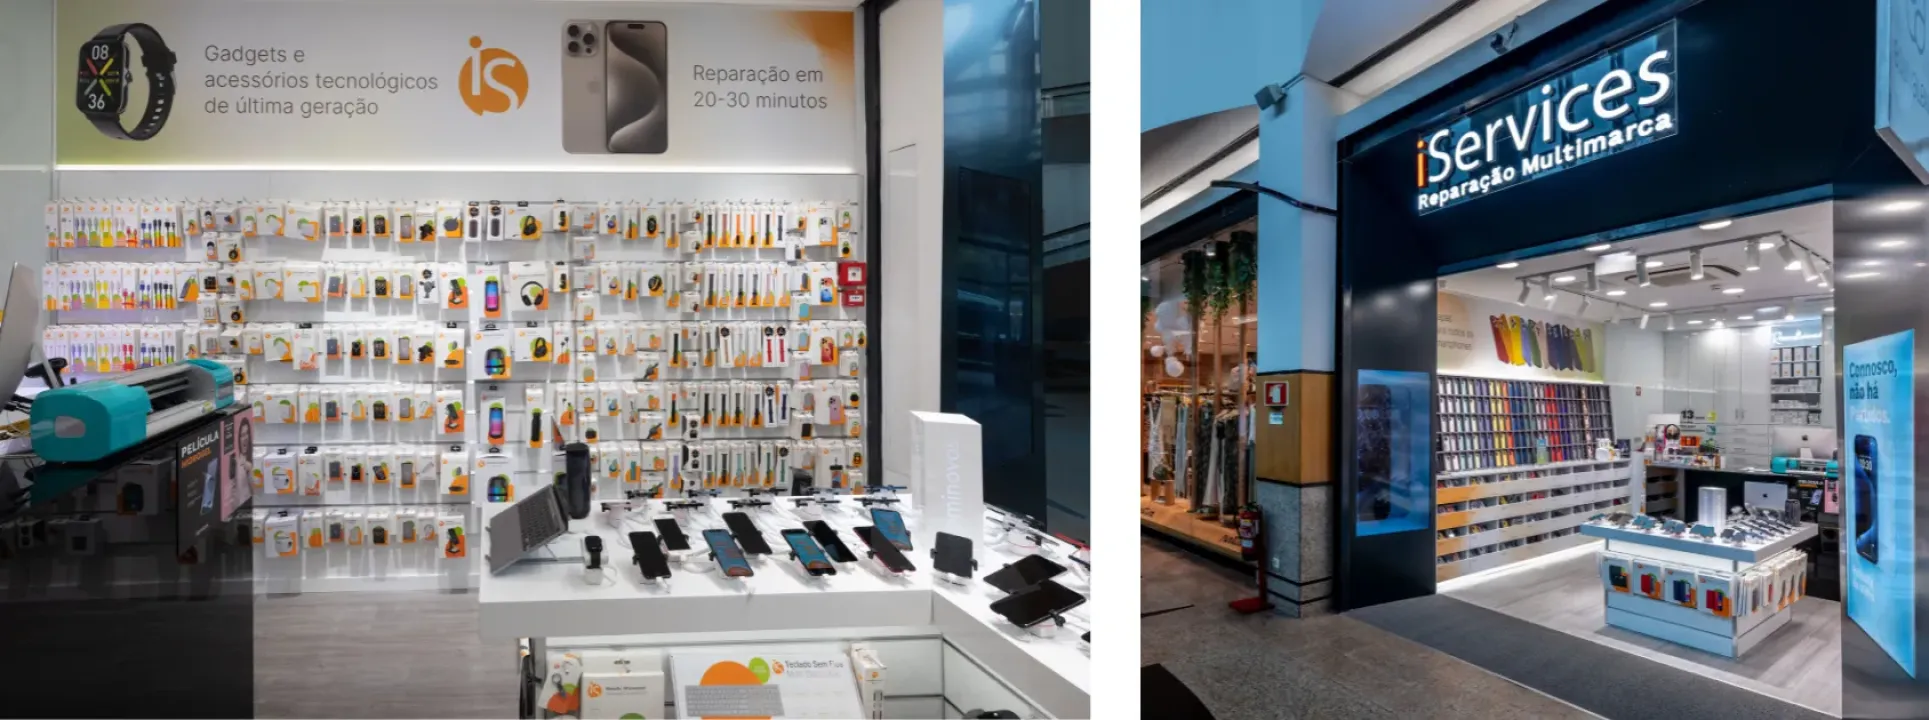 iServices abre segunda tienda en Guimarães  blog post